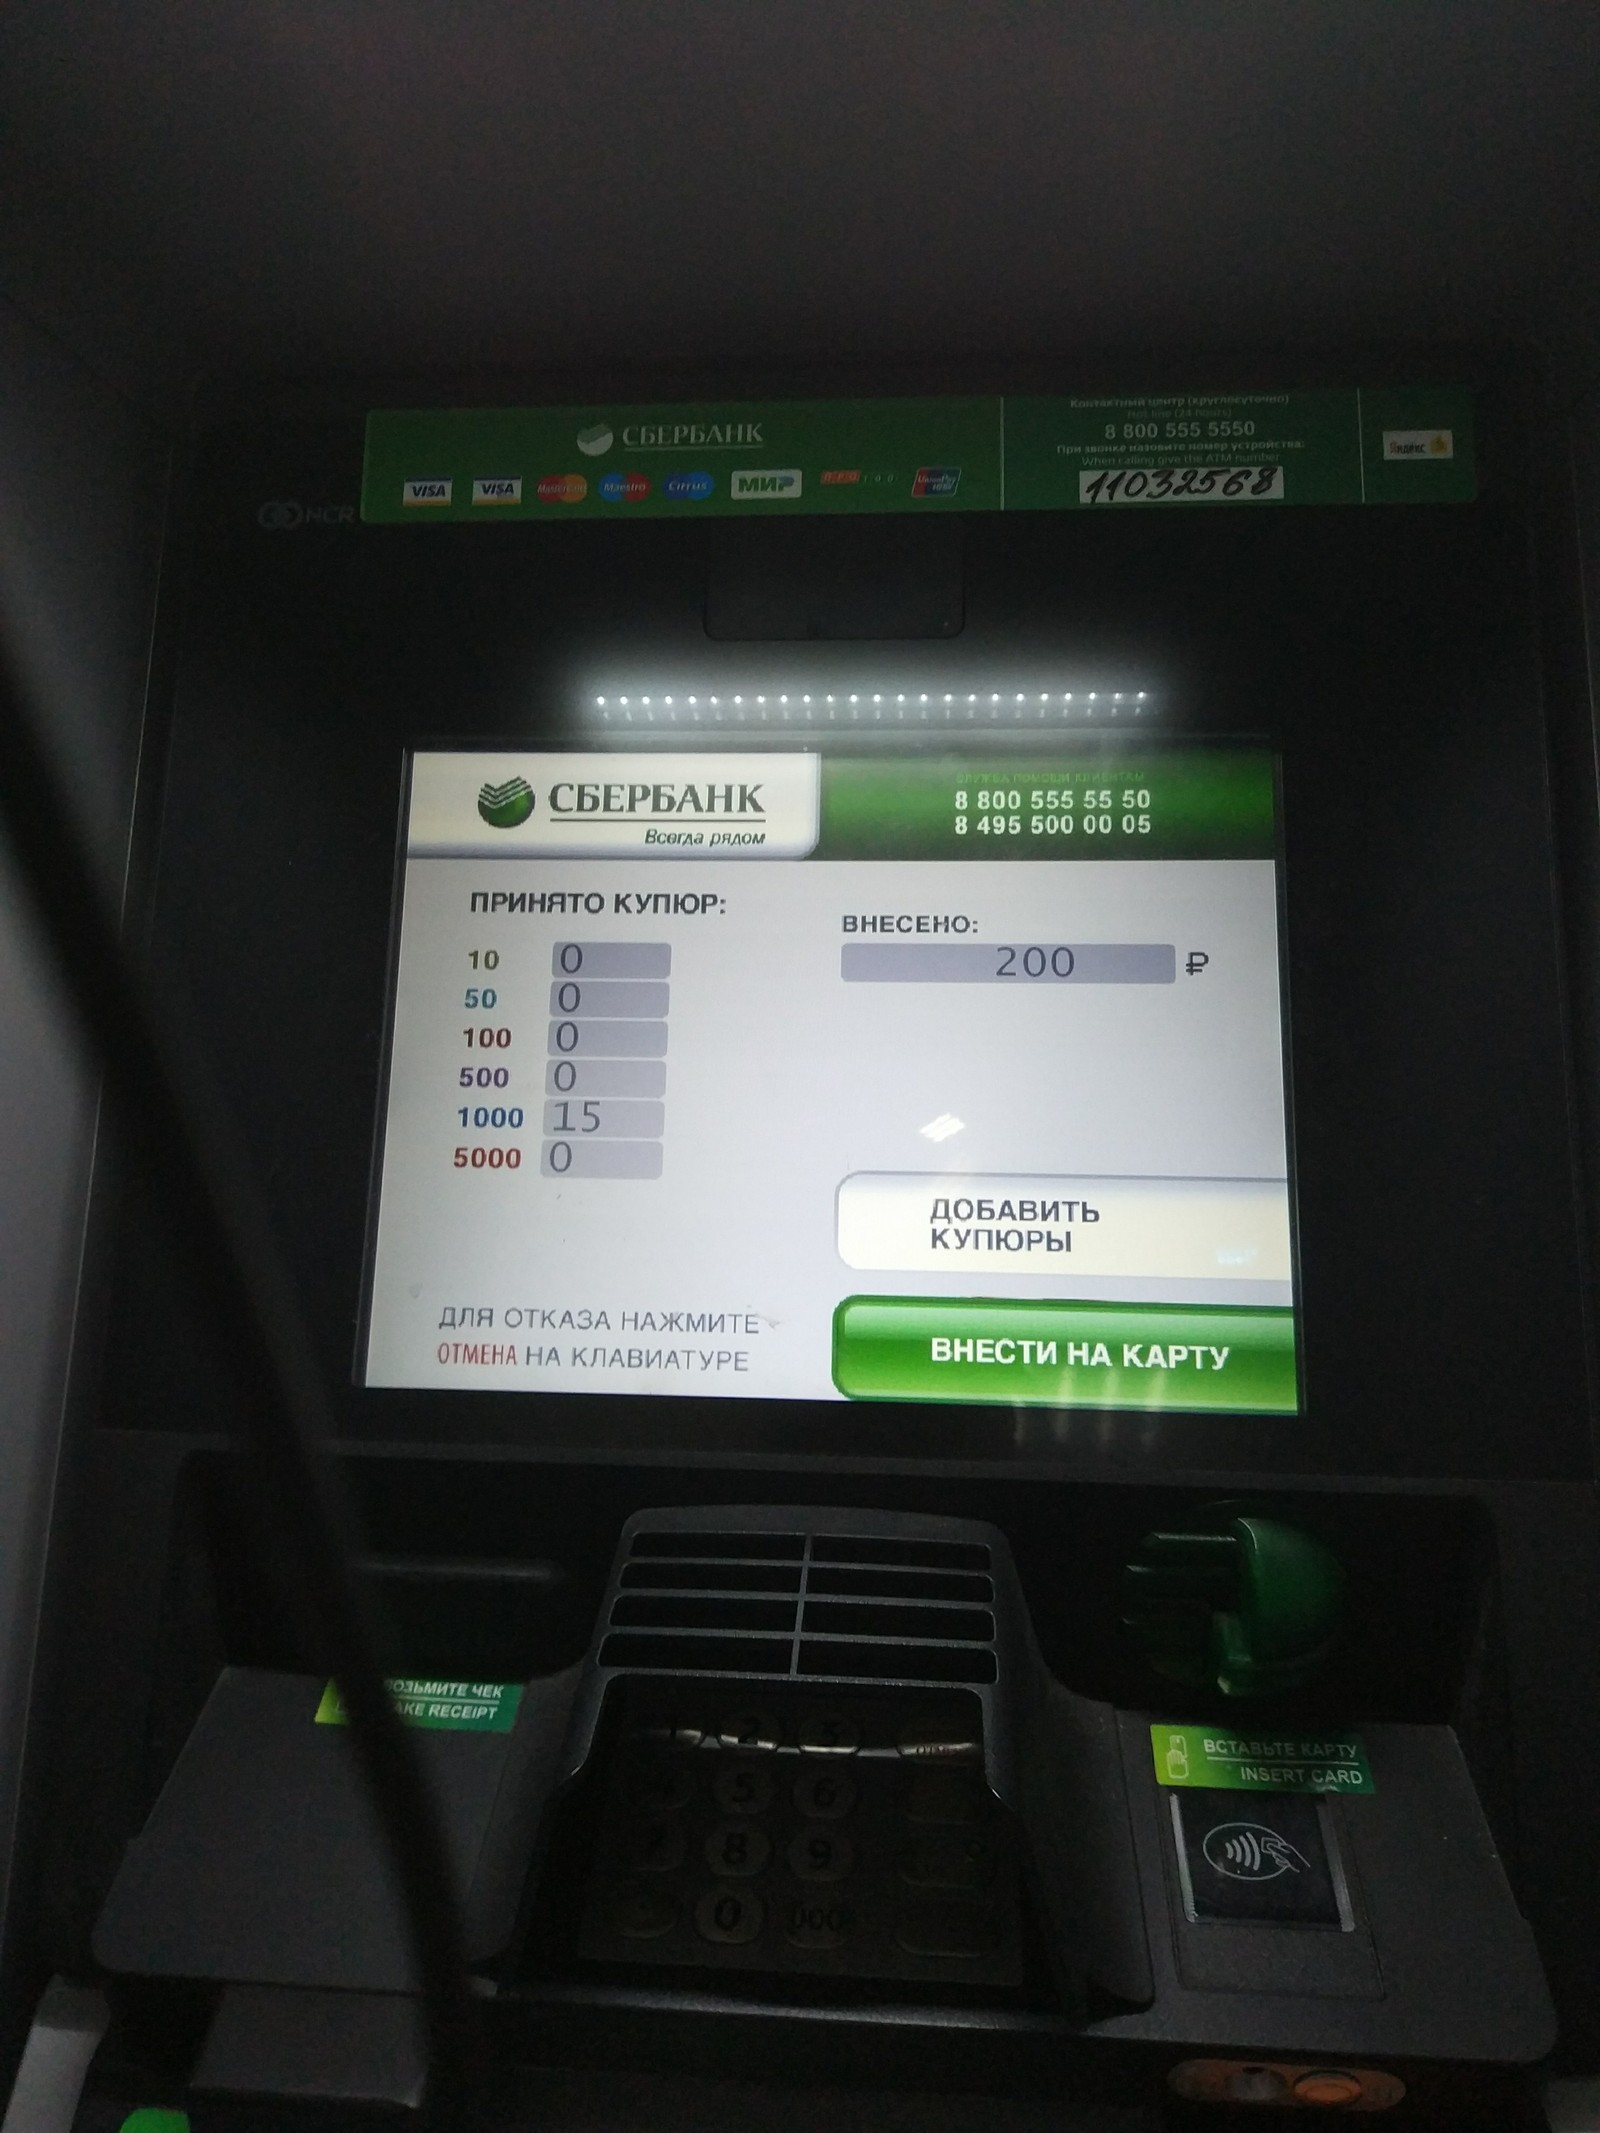 Сколько принимает банкомат сбербанка